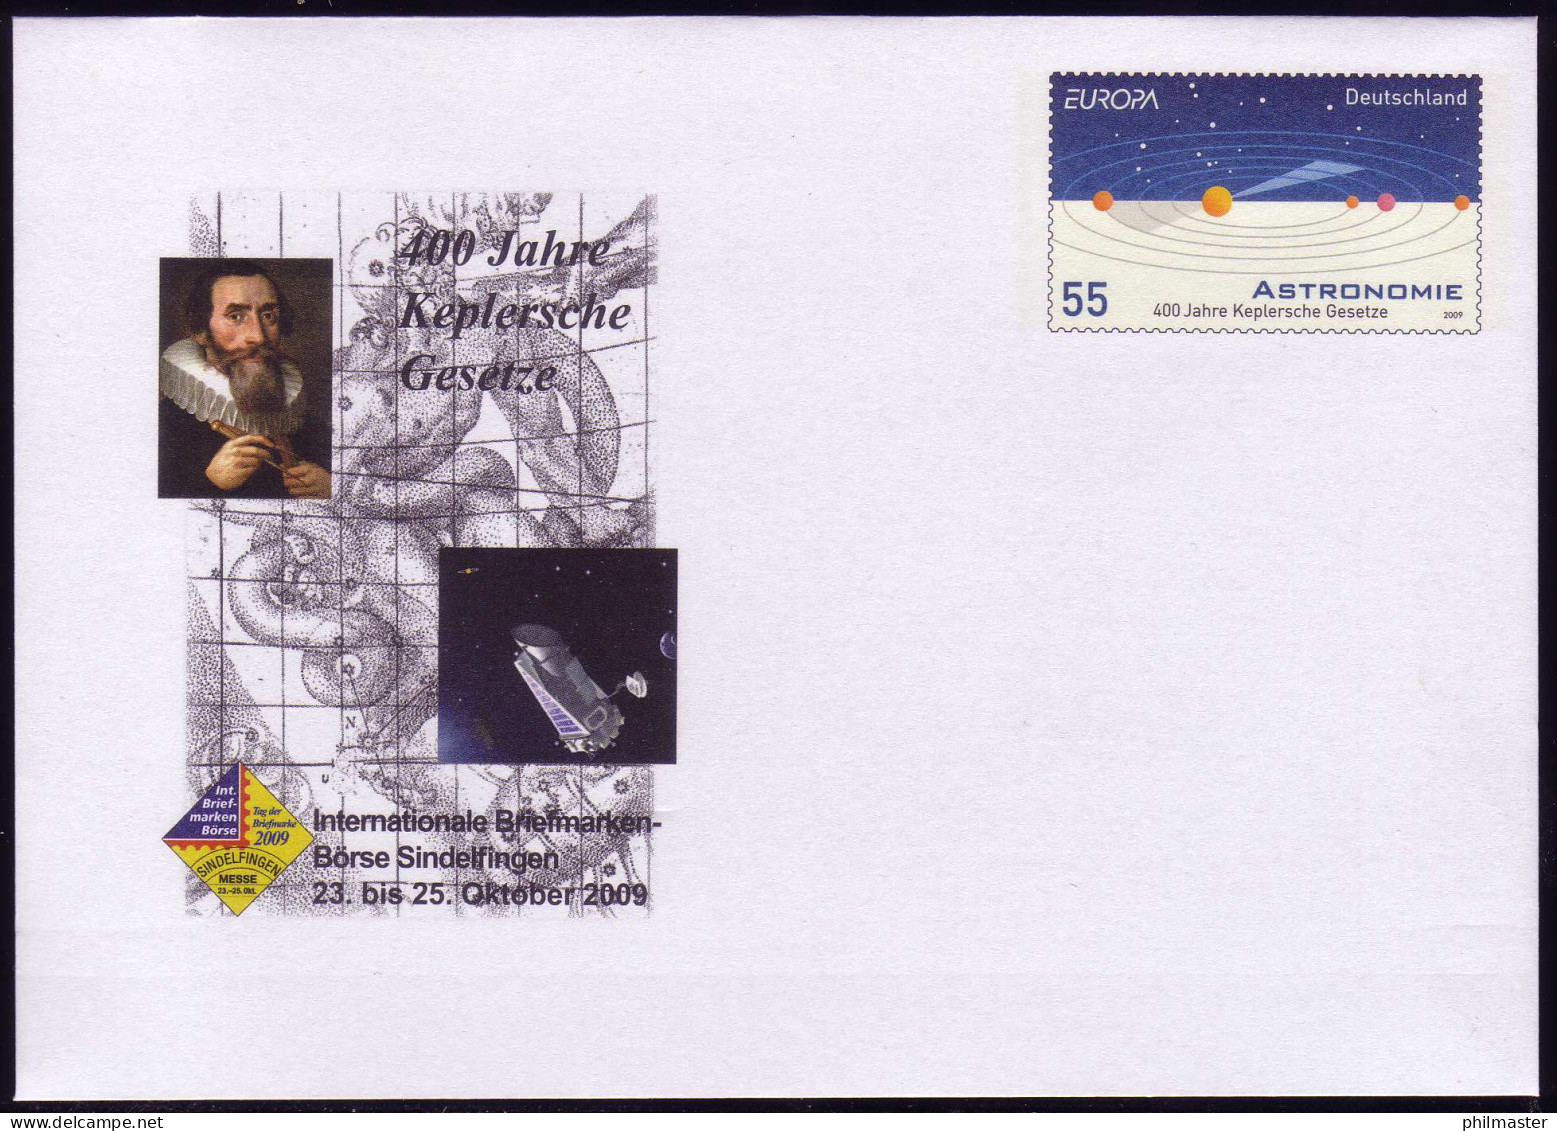 USo 192 Briefmarken-Börse Sindelfingen - Kepler 2009, Postfrisch - Enveloppes - Neuves